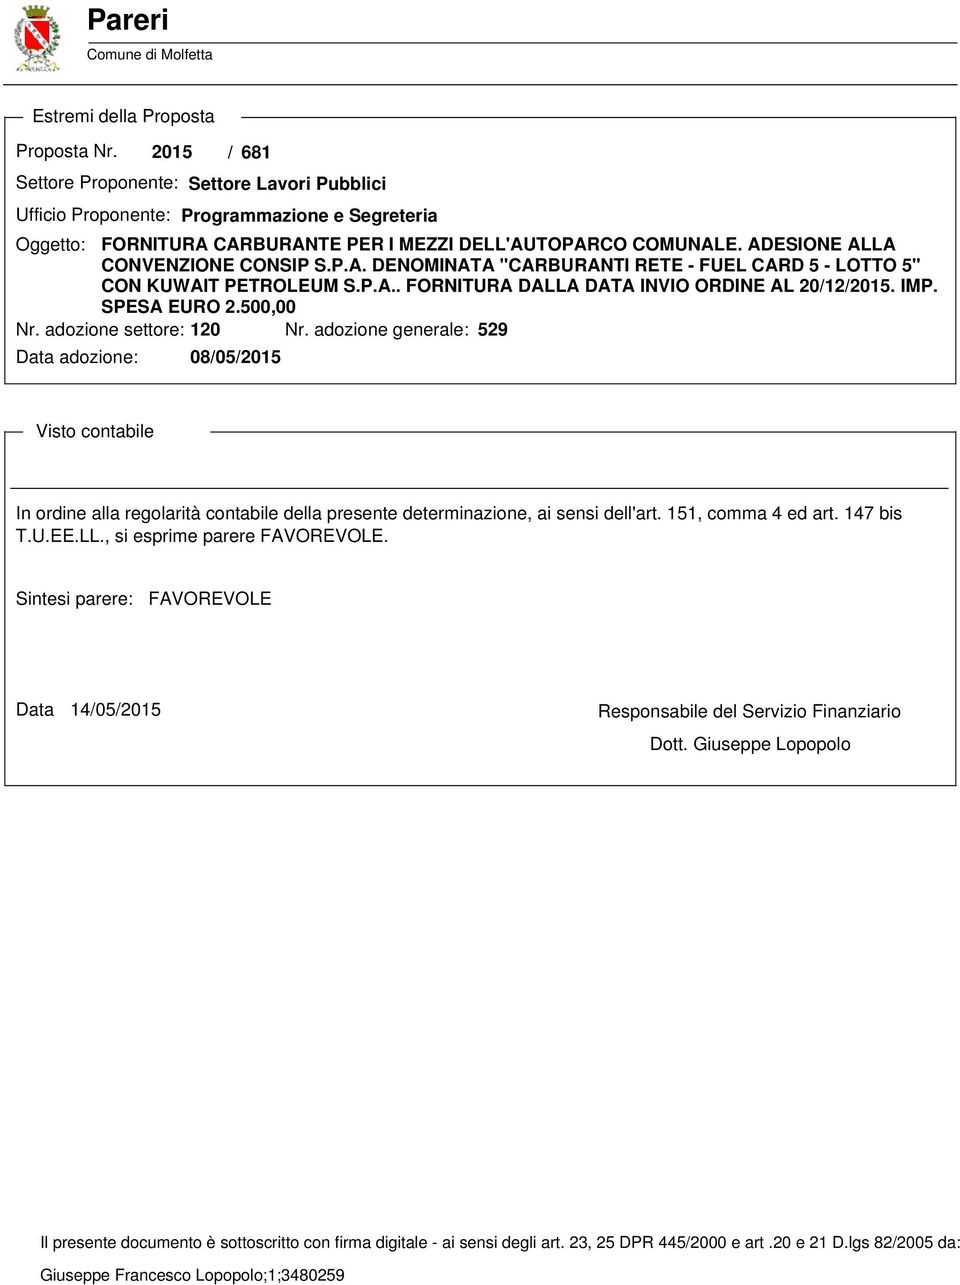 ADESIONE ALLA CONVENZIONE CONSIP S.P.A. DENOMINATA "CARBURANTI RETE - FUEL CARD 5 - LOTTO 5" CON KUWAIT PETROLEUM S.P.A.. FORNITURA DALLA DATA INVIO ORDINE AL 20/12/2015. IMP. SPESA EURO 2.500,00 Nr.